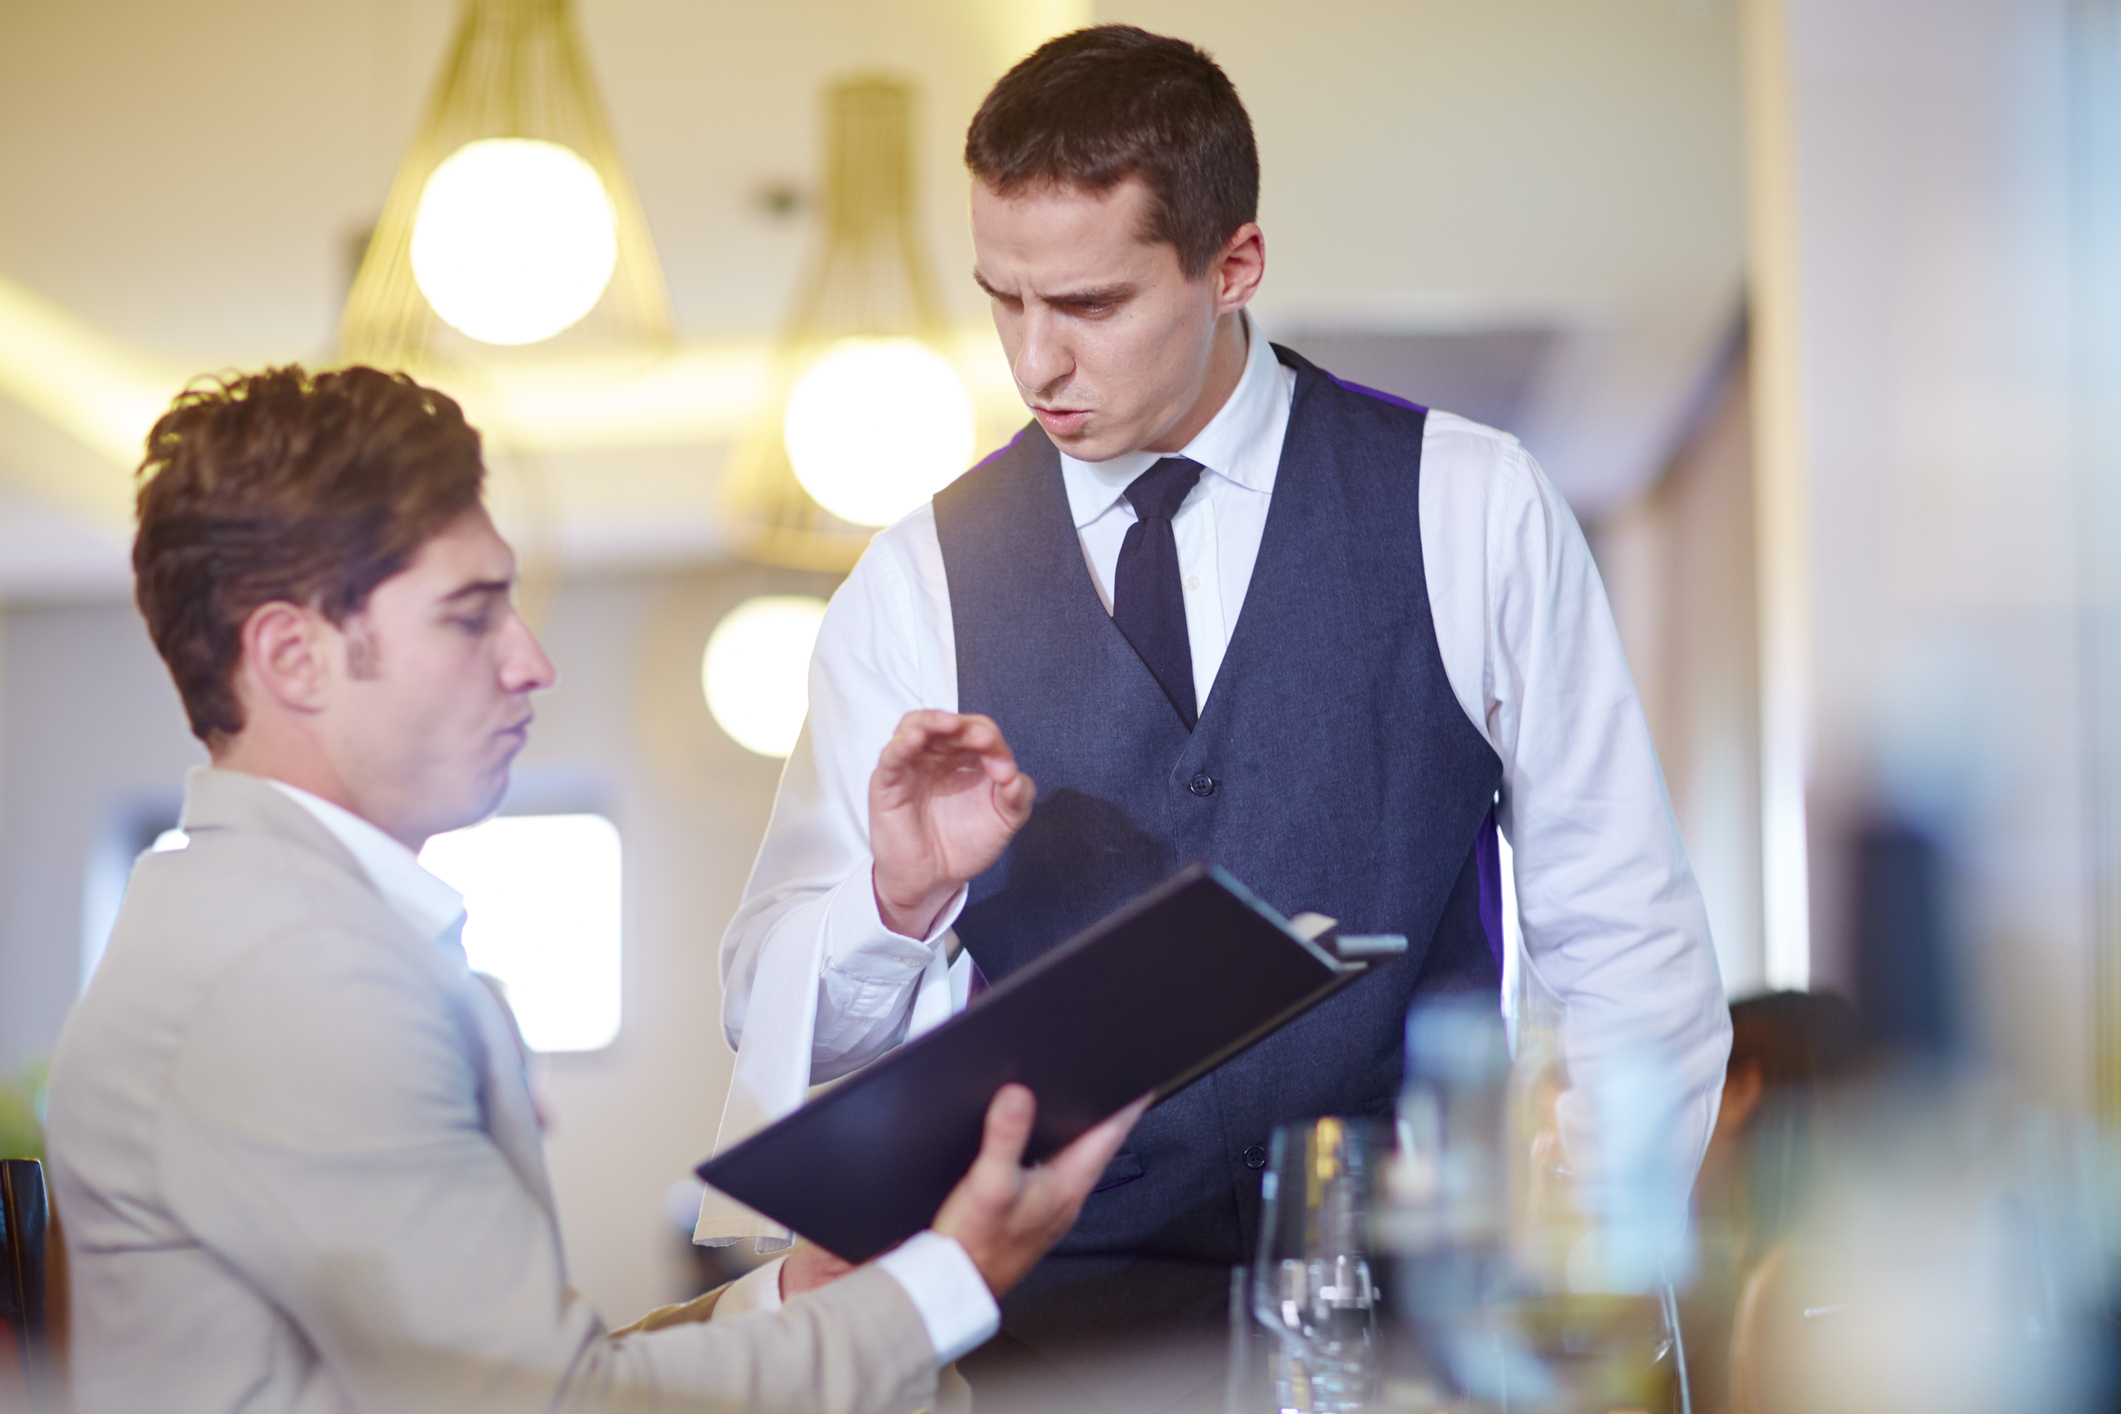 a waiter explaining the menu to a customer